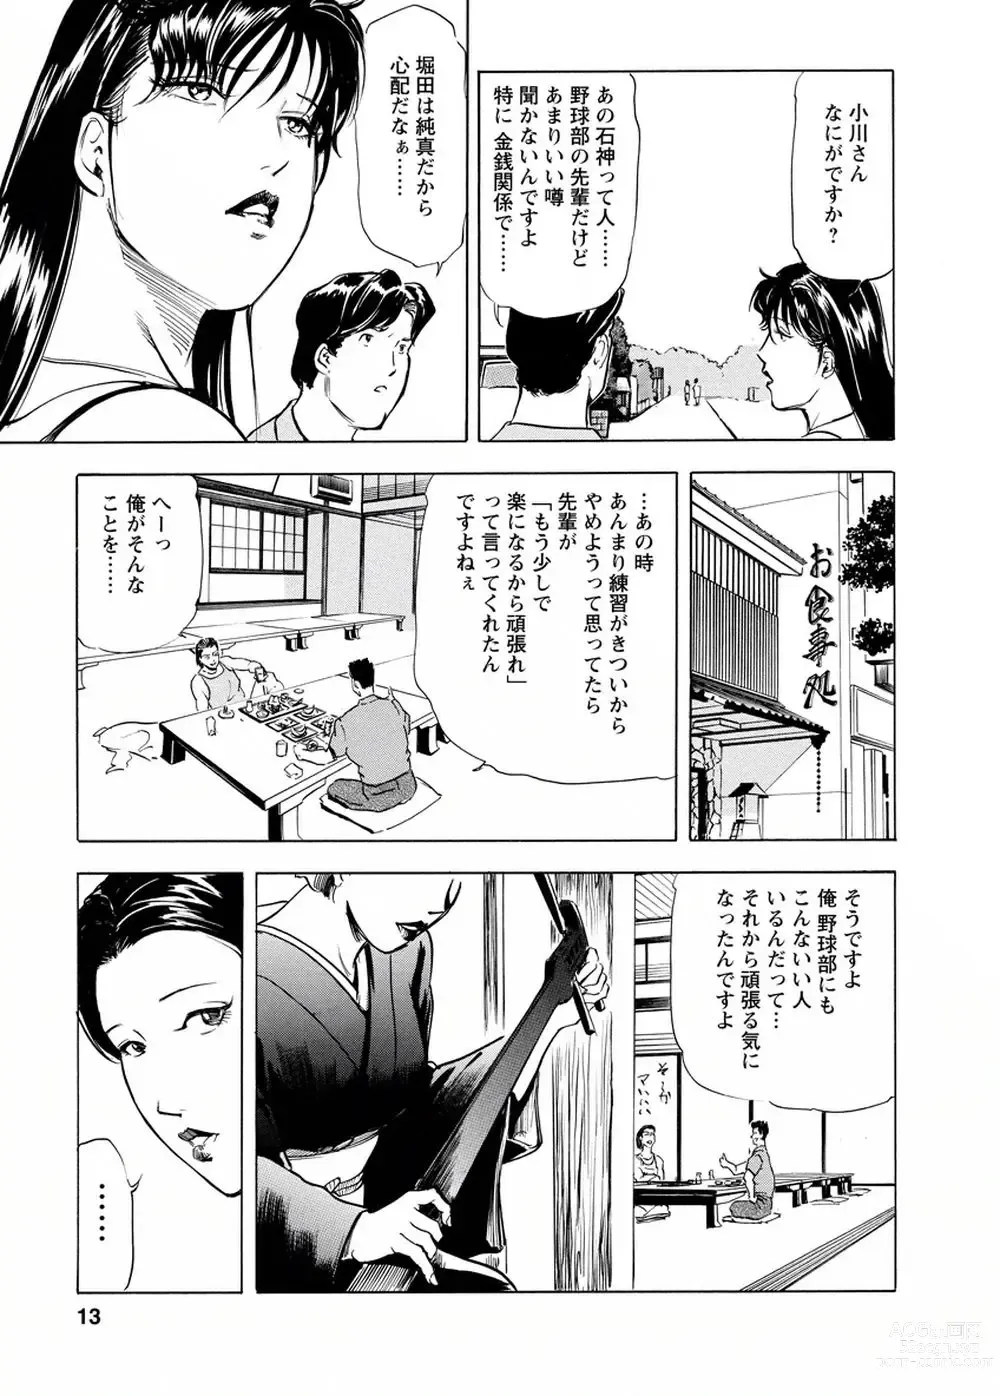 Page 12 of manga Tsuyako no Yu Vol.4